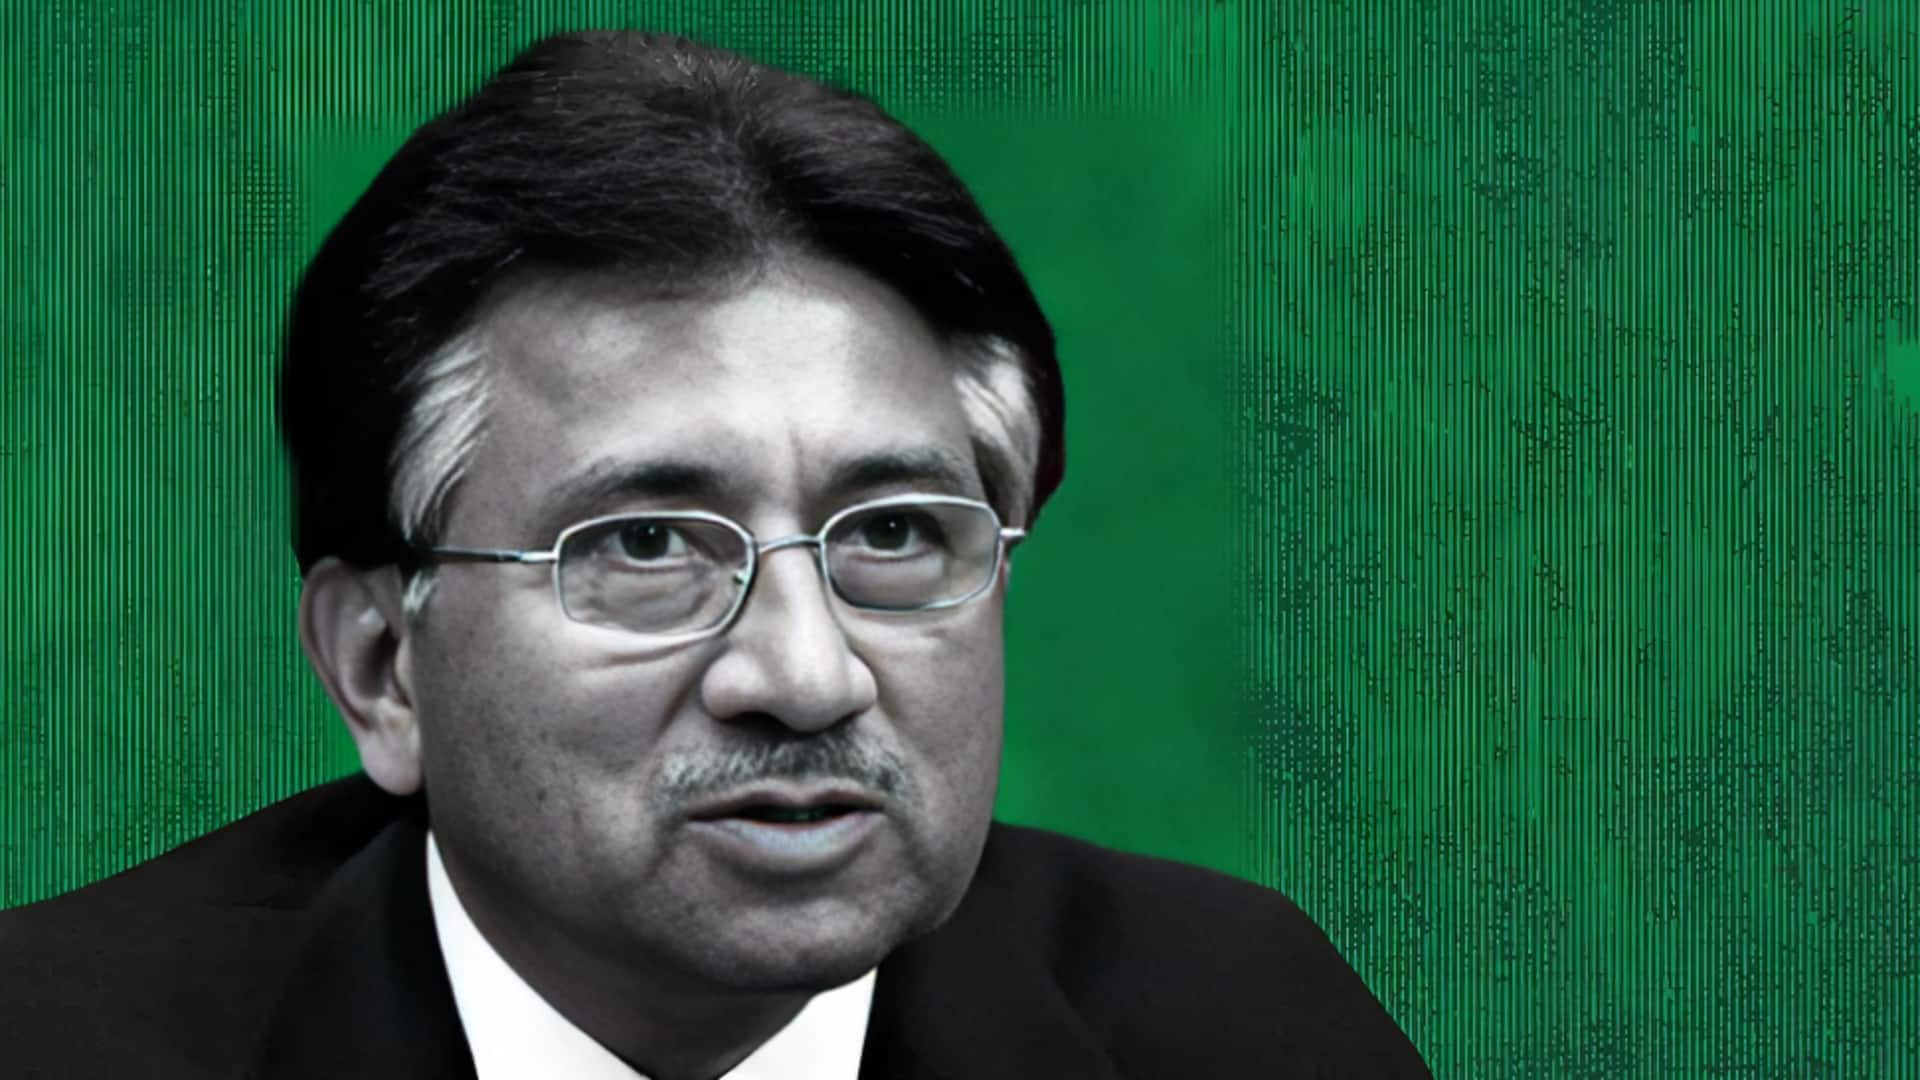 पाकिस्तान: देशद्रोह मामले में पूर्व राष्ट्रपति जनरल परवेज मुशर्रफ की फांसी की सजा बरकरार